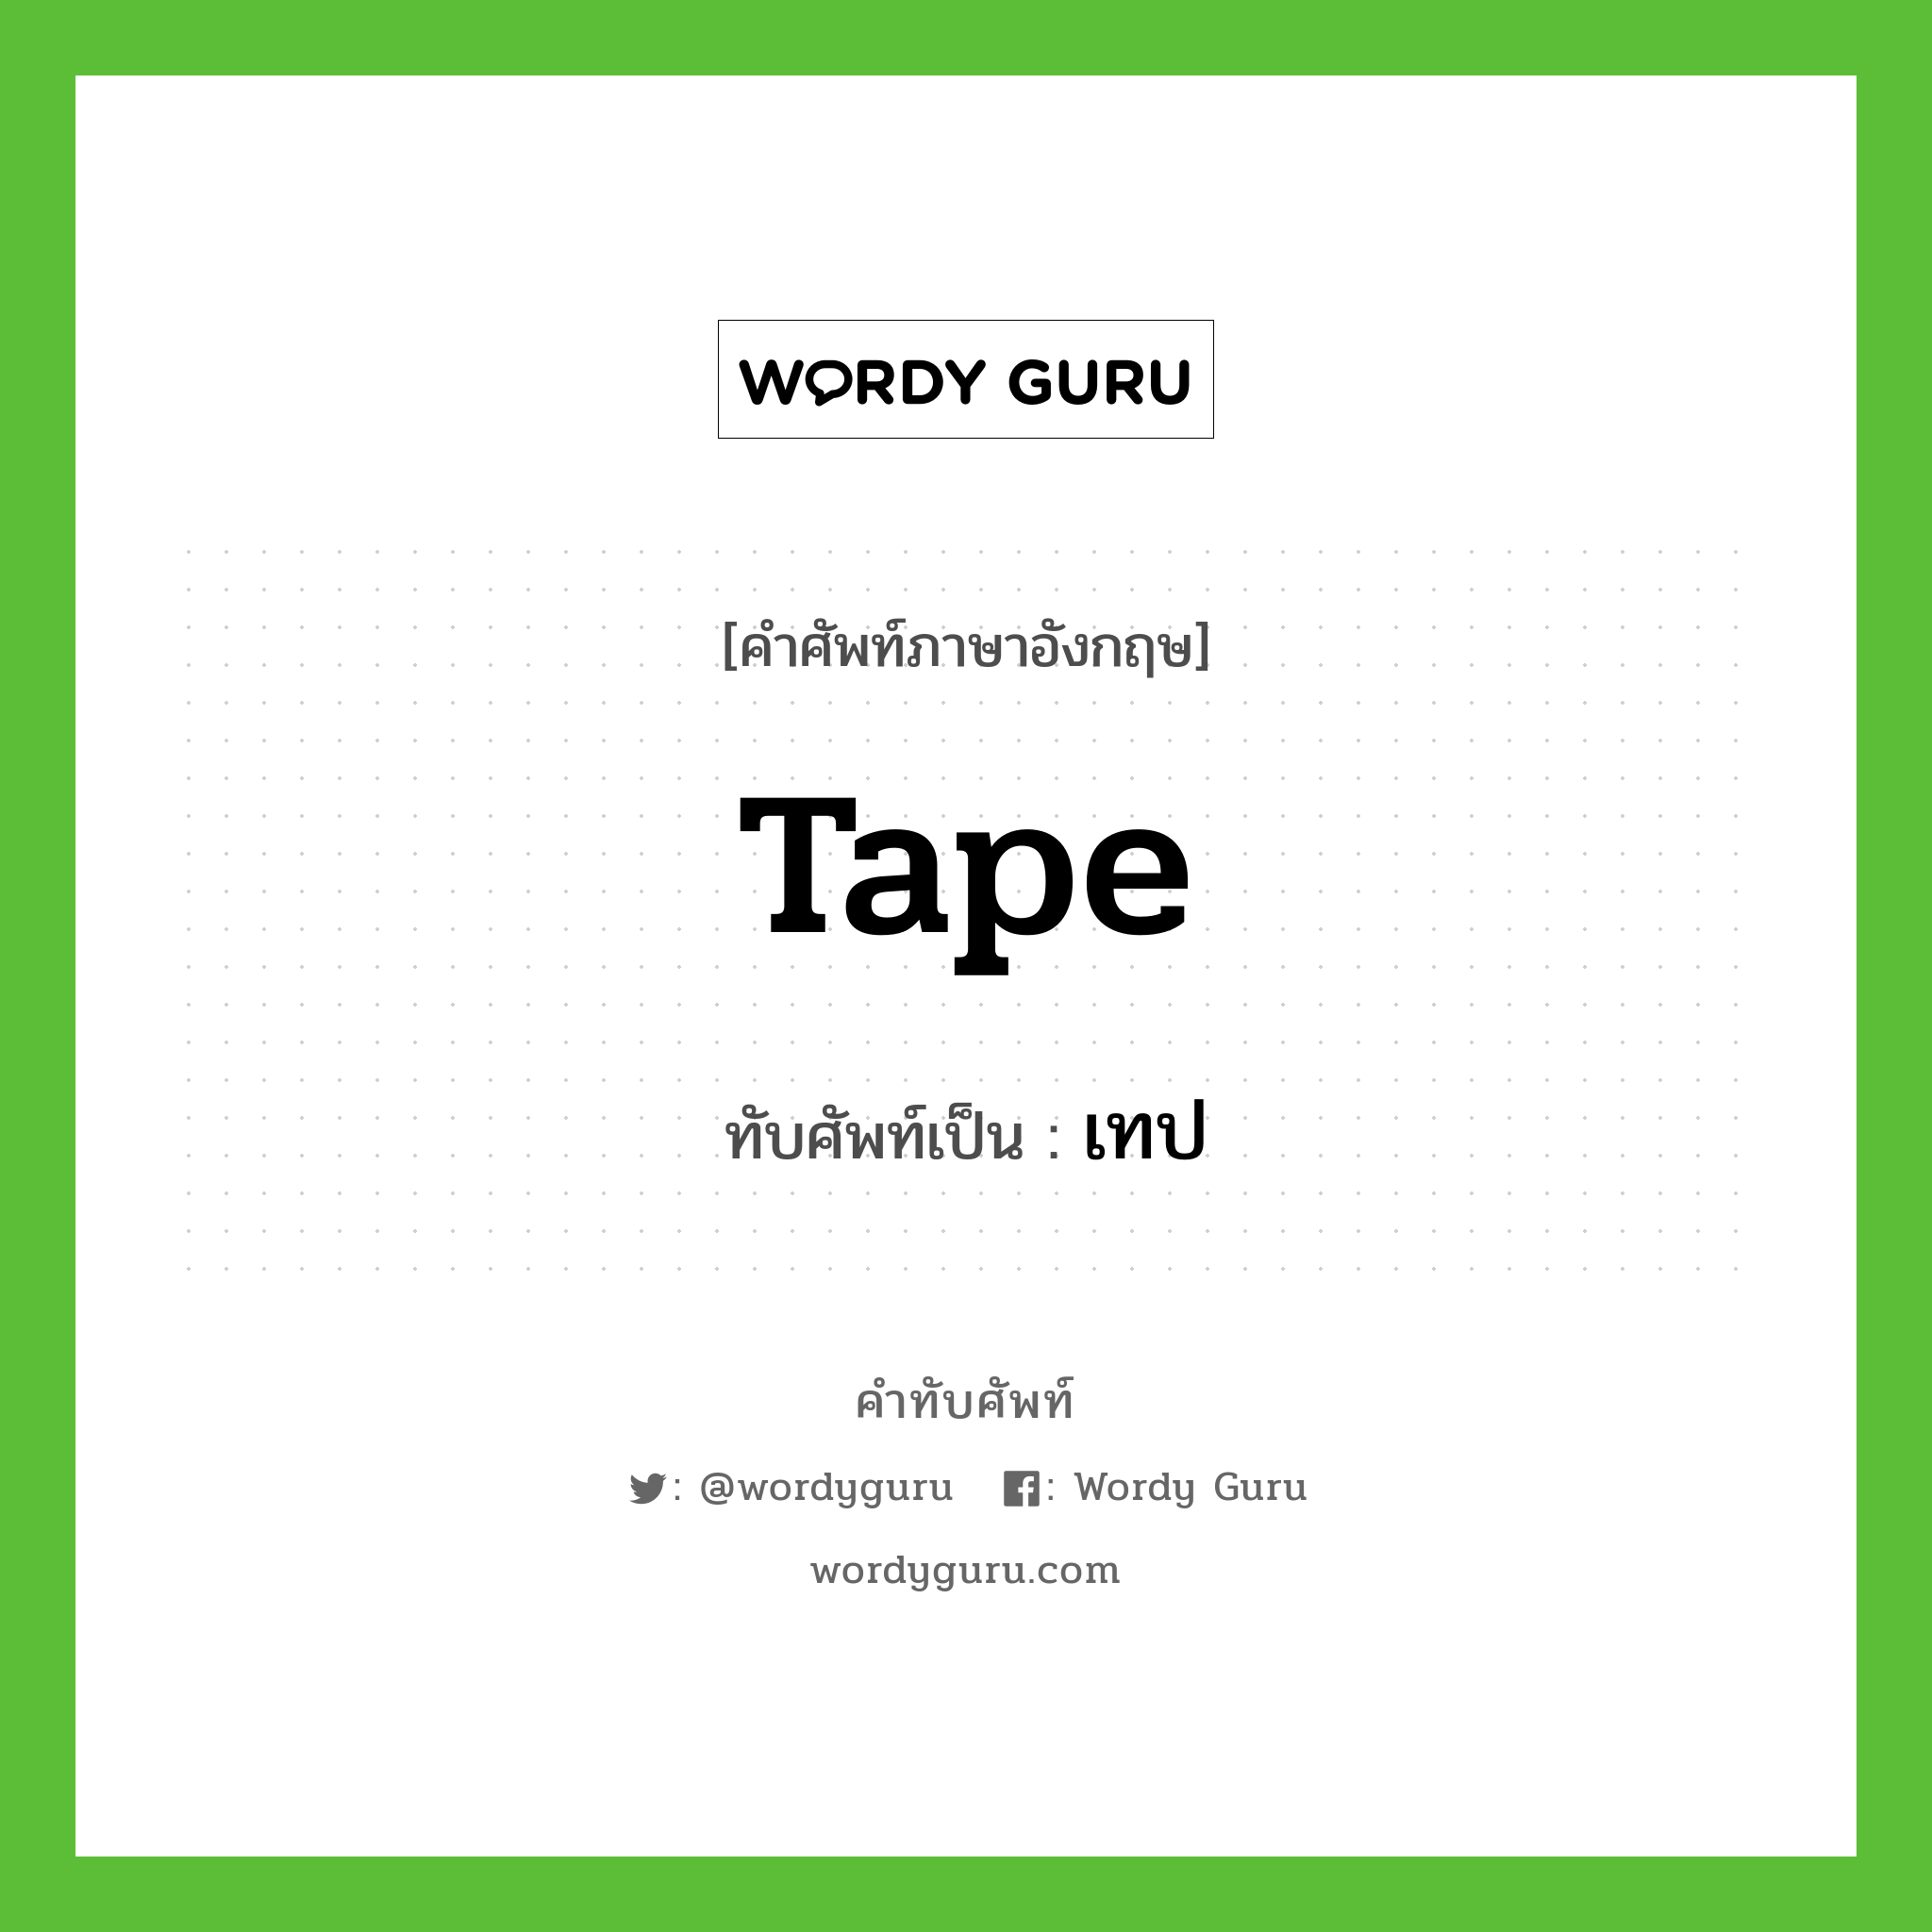 tape เขียนเป็นคำไทยว่าอะไร?, คำศัพท์ภาษาอังกฤษ tape ทับศัพท์เป็น เทป